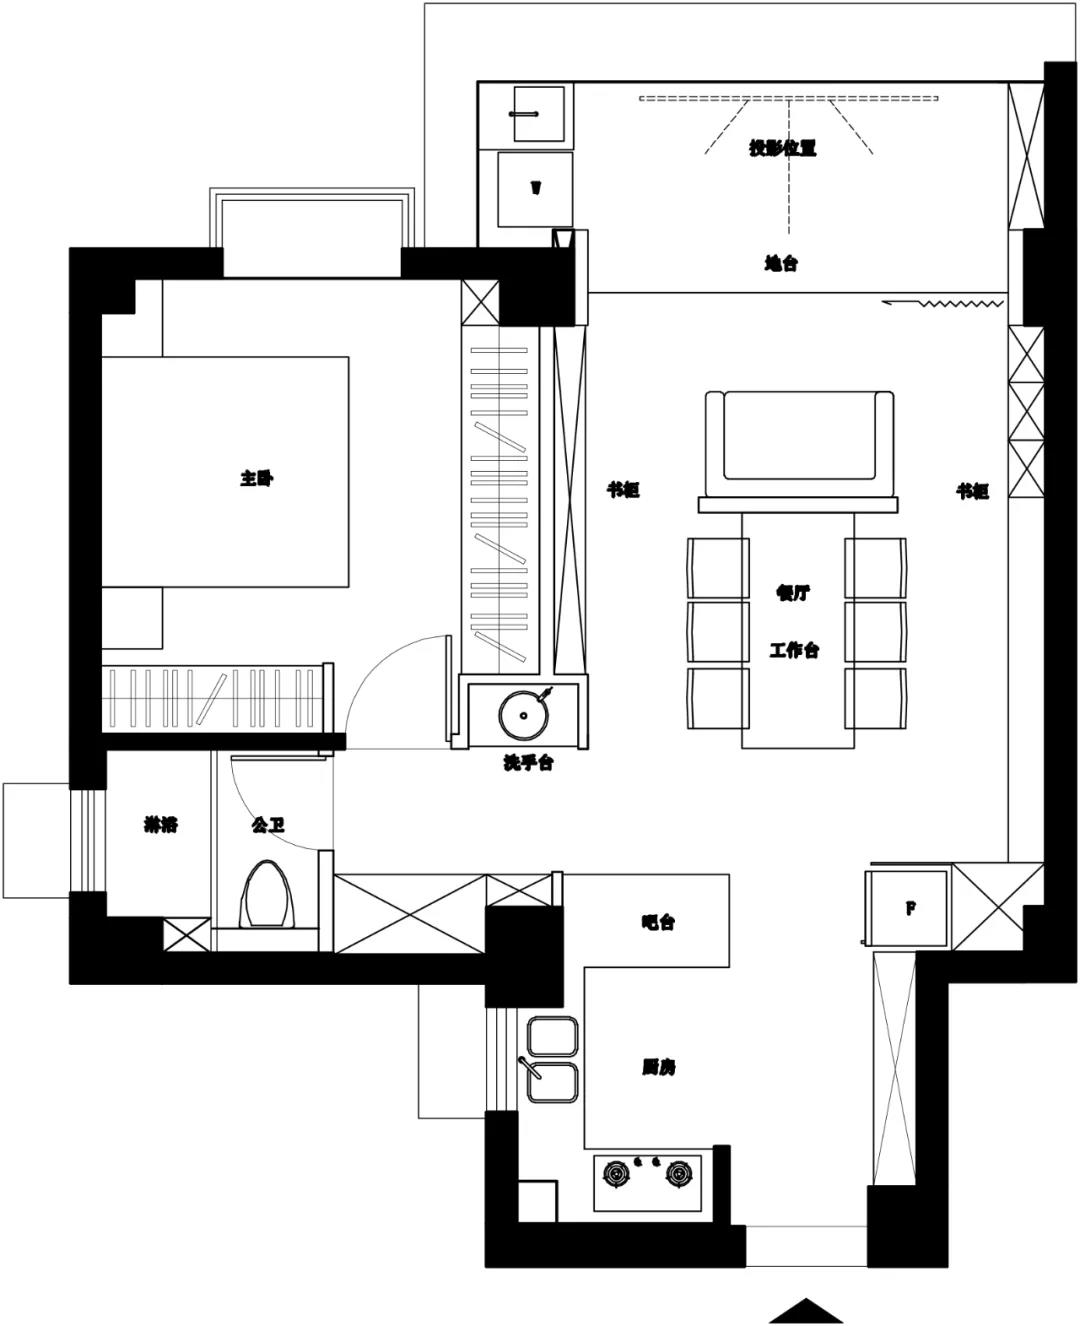 户型方正，每个房间布局规则，空间利用率高，餐厅、厨房动线清晰合理。